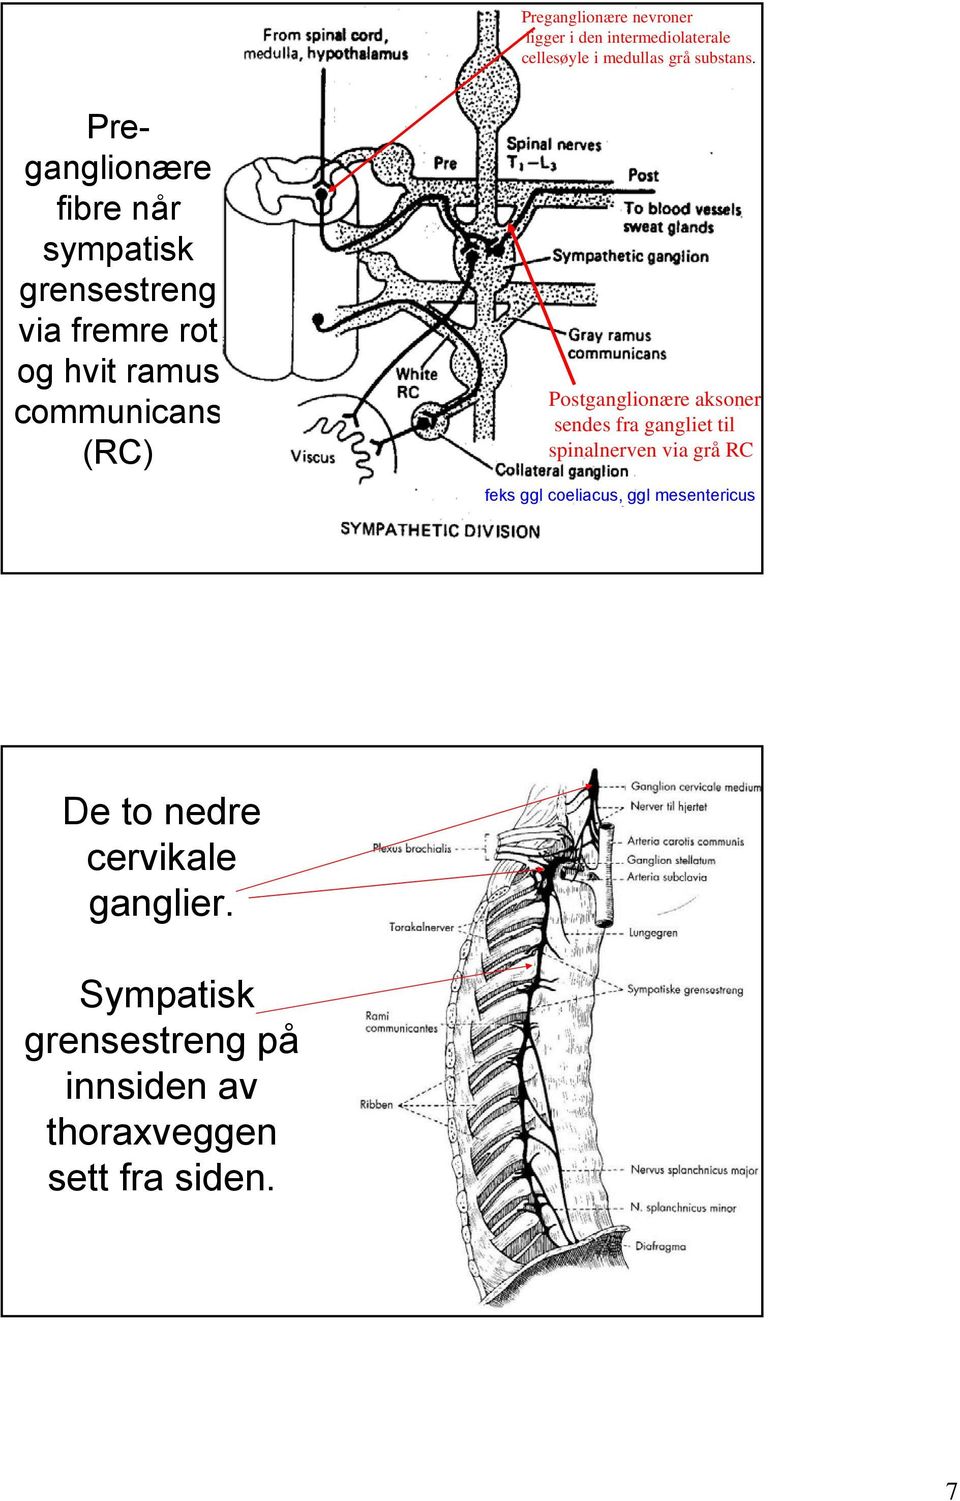 Postganglionære aksoner sendes fra gangliet til spinalnerven via grå RC feks ggl coeliacus, ggl